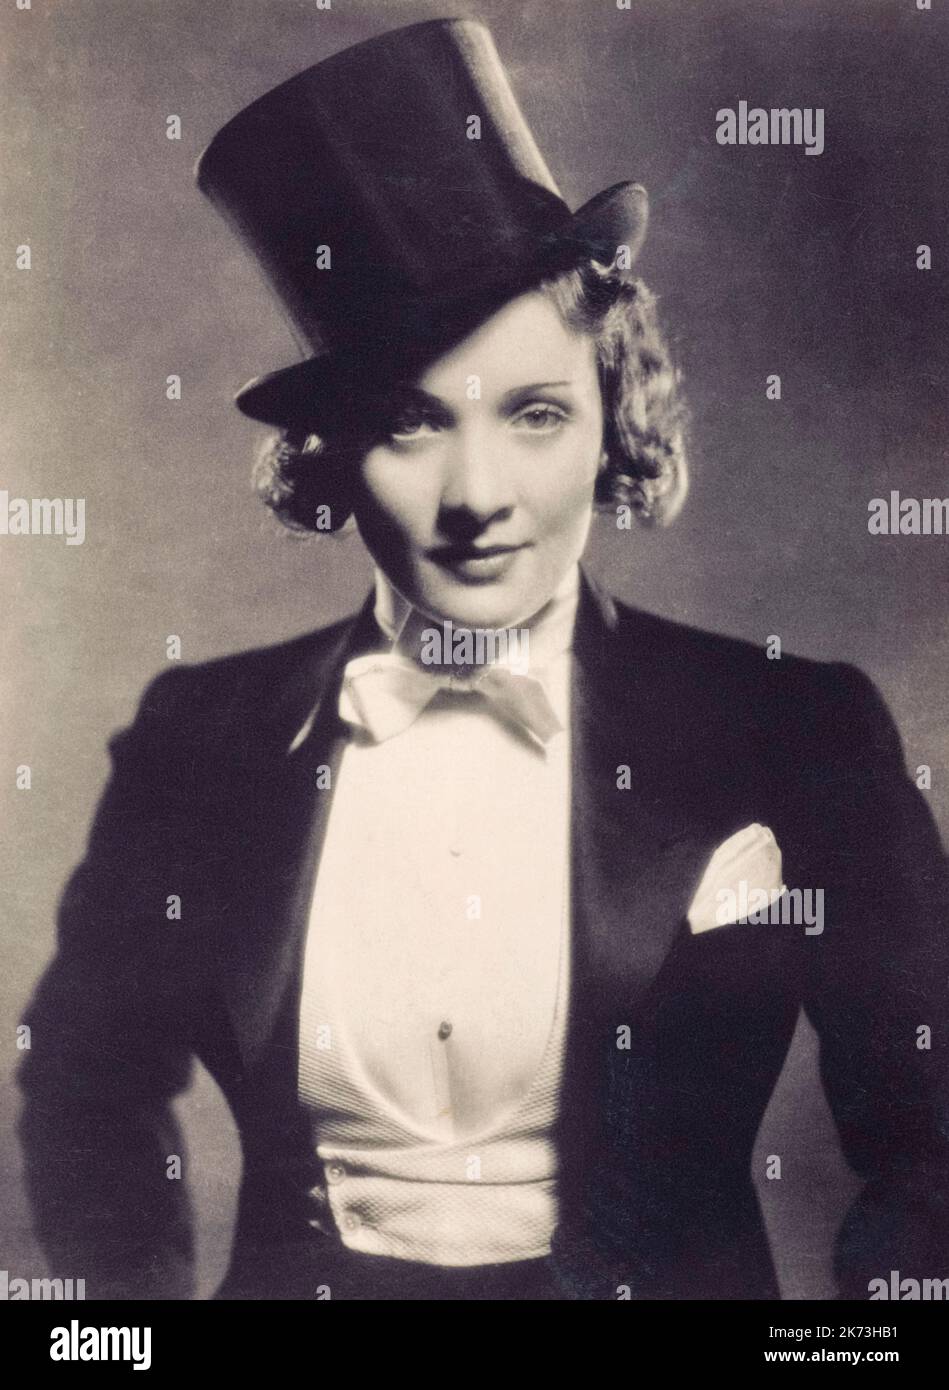 Marlene Dietrich, 1901 - 1992. In Deutschland geborene amerikanische Filmschauspielerin. Vollständiger Name Marie Magdalene Dietrich. Aus einem Pressefoto der 30er Jahre. NUR REDAKTIONELL. Stockfoto